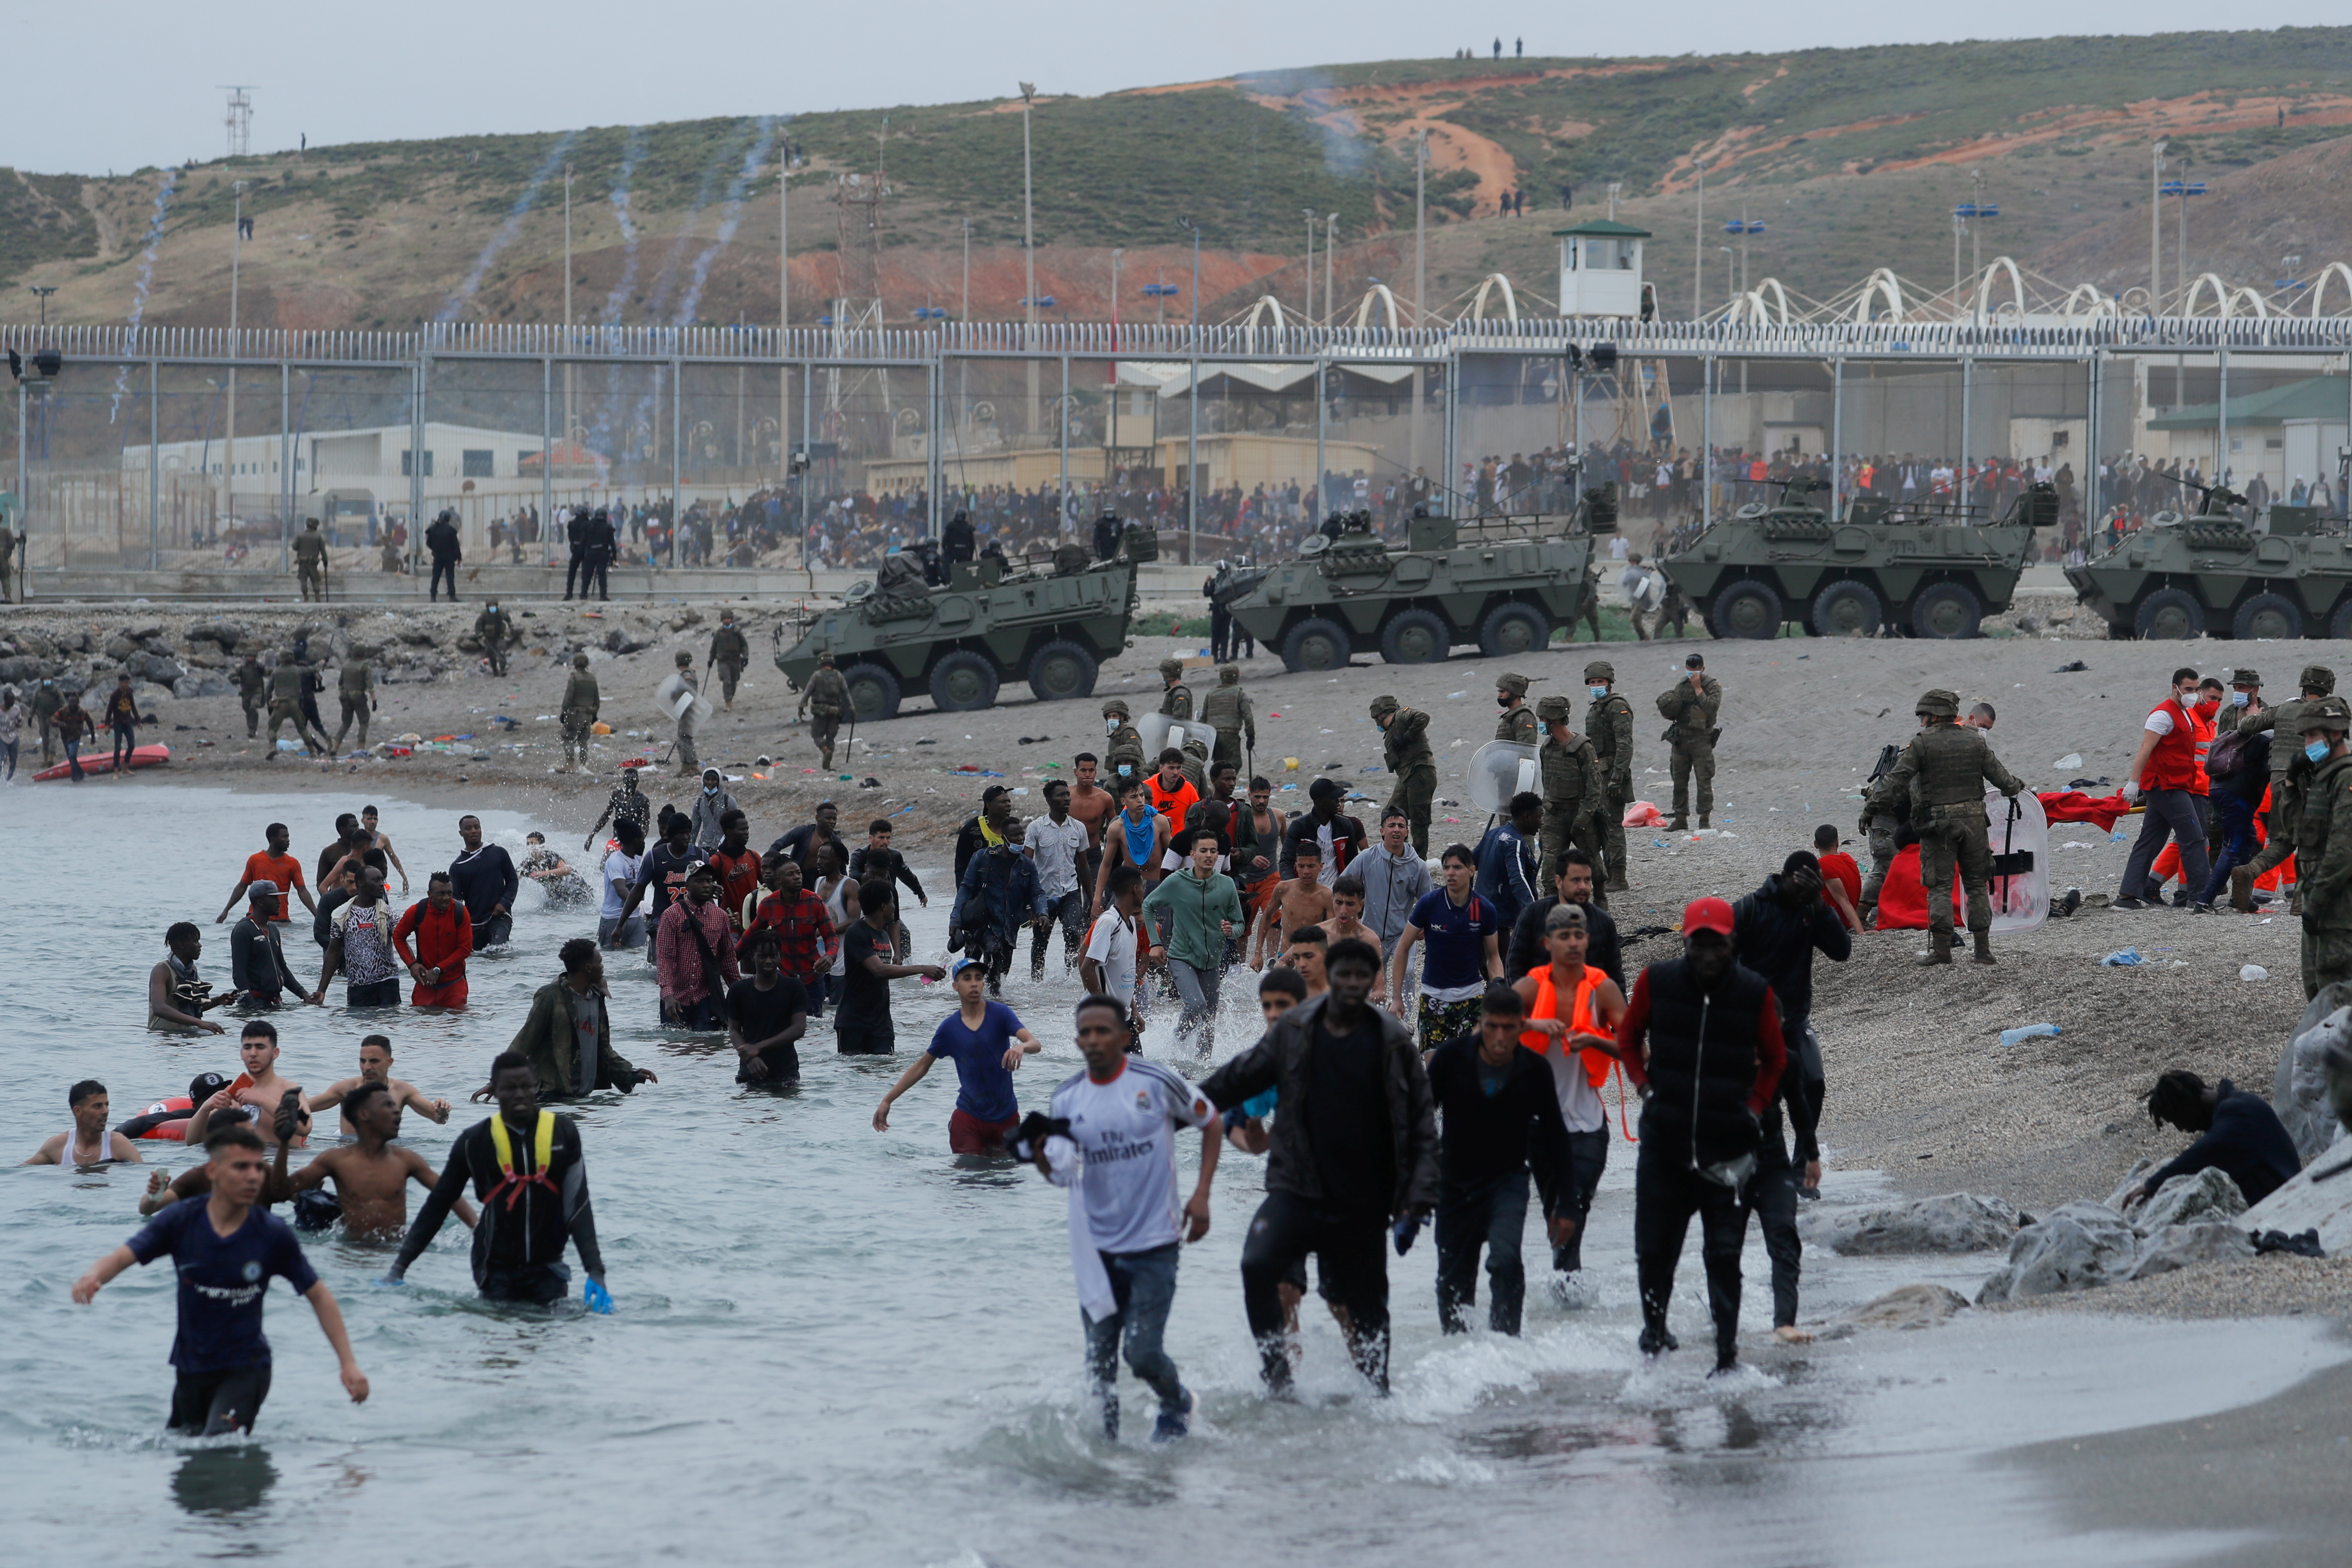 España acusa a Marruecos de “agresión” y “chantaje” por la llegada masiva de inmigrantes a Ceuta